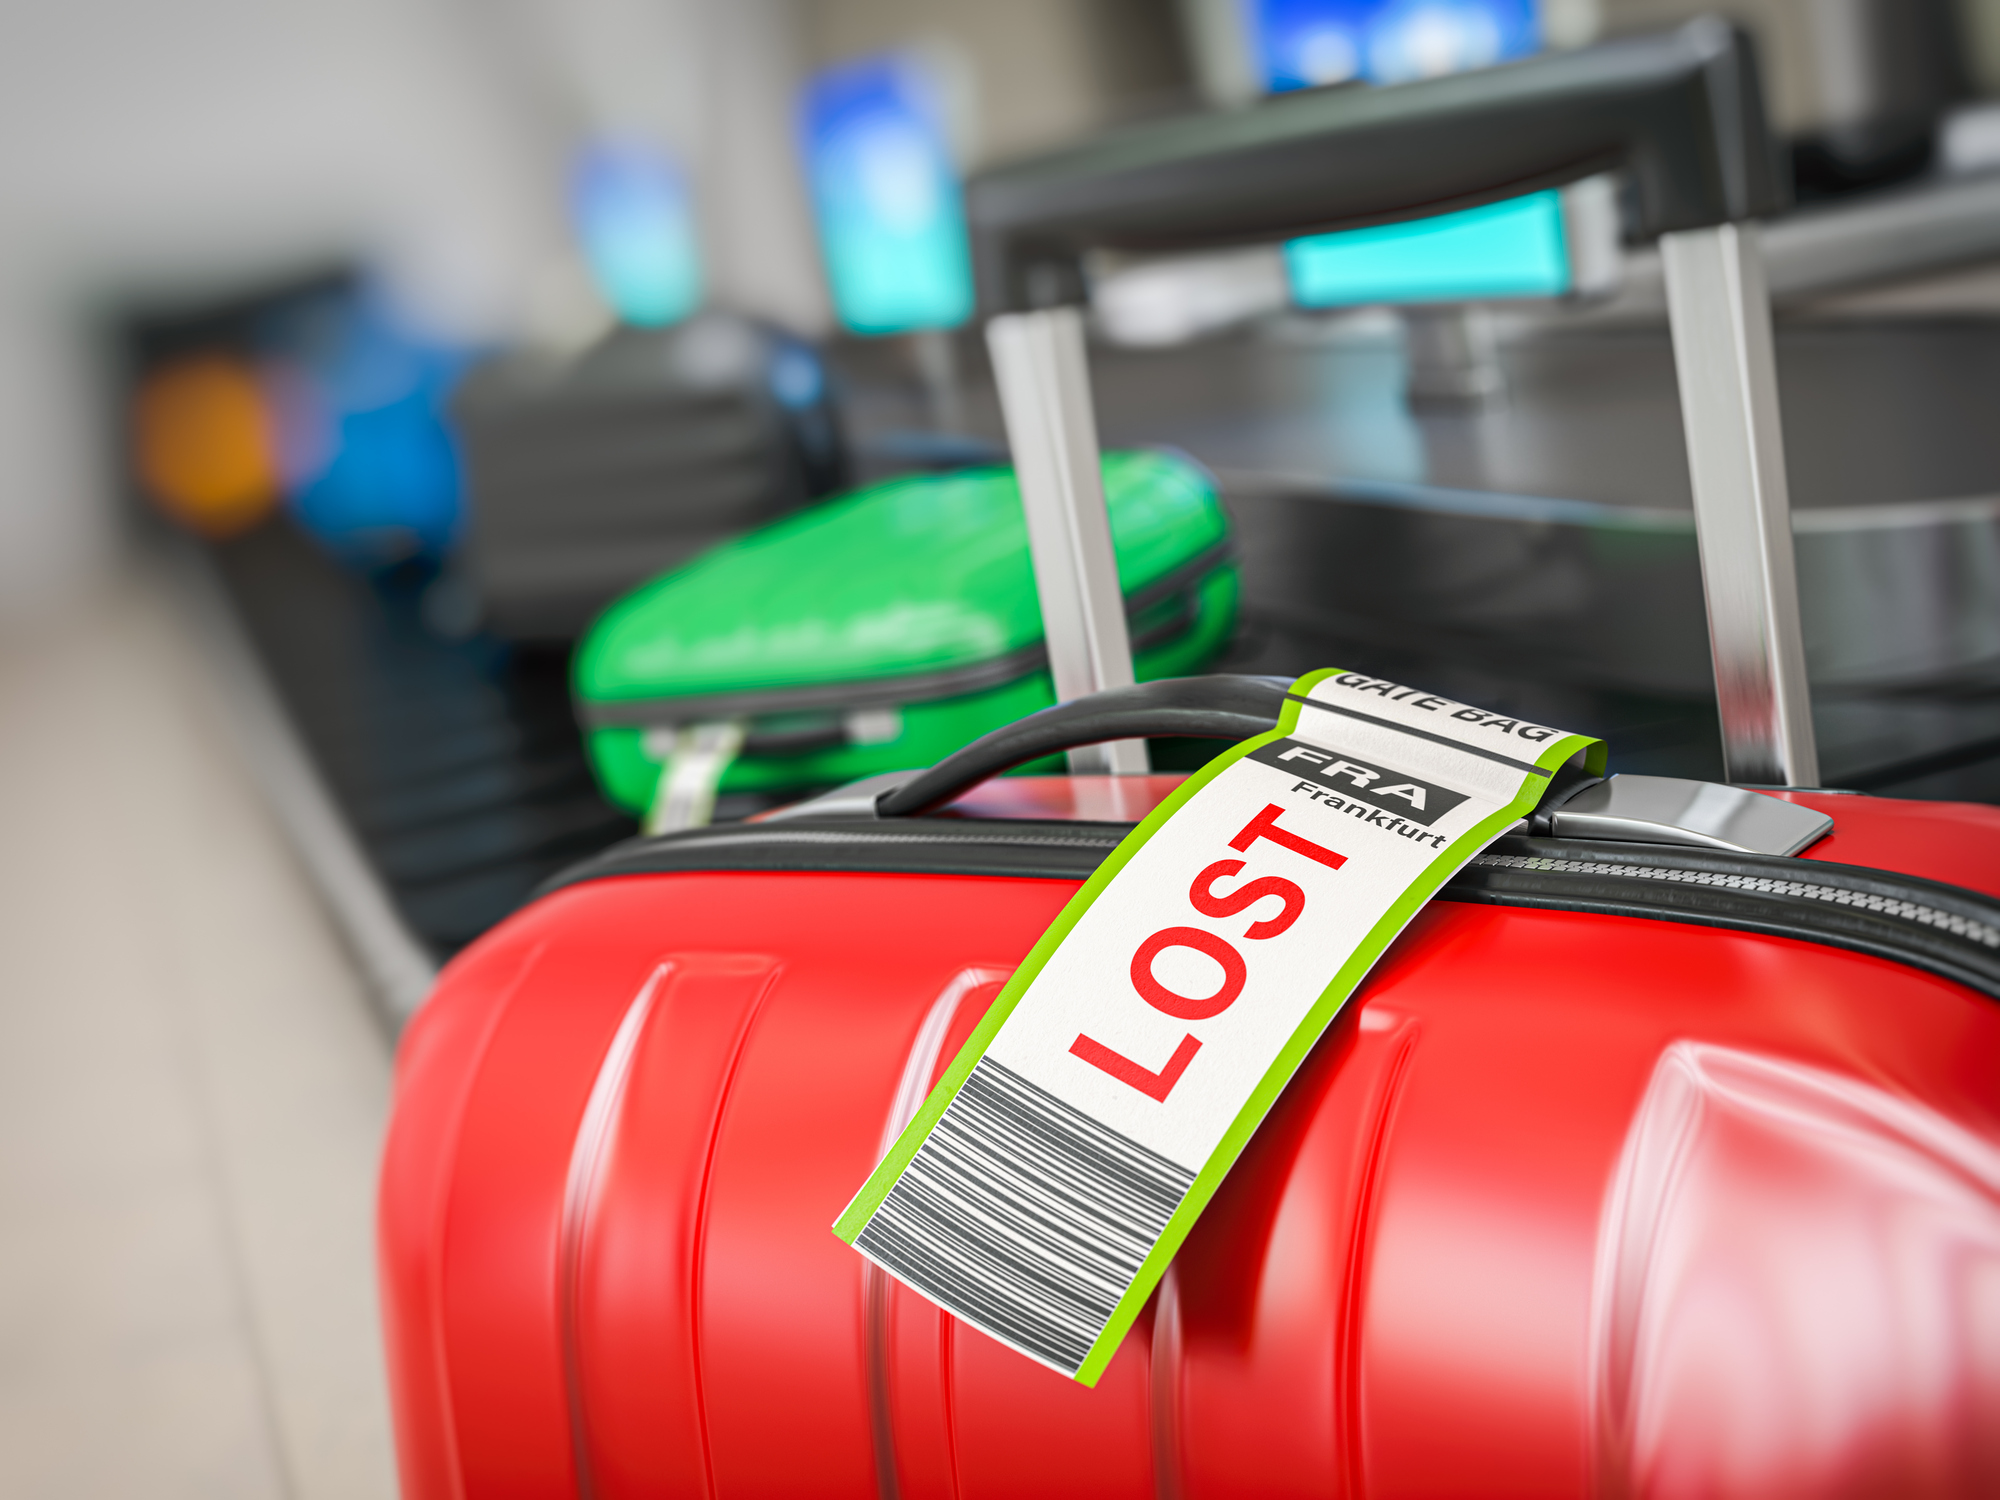 I forgrunden ses en kuffert med et taskeetiket, hvorpå der står &quot;LOST&quot;, i baggrunden kører flere kufferter på en bagagebånd.